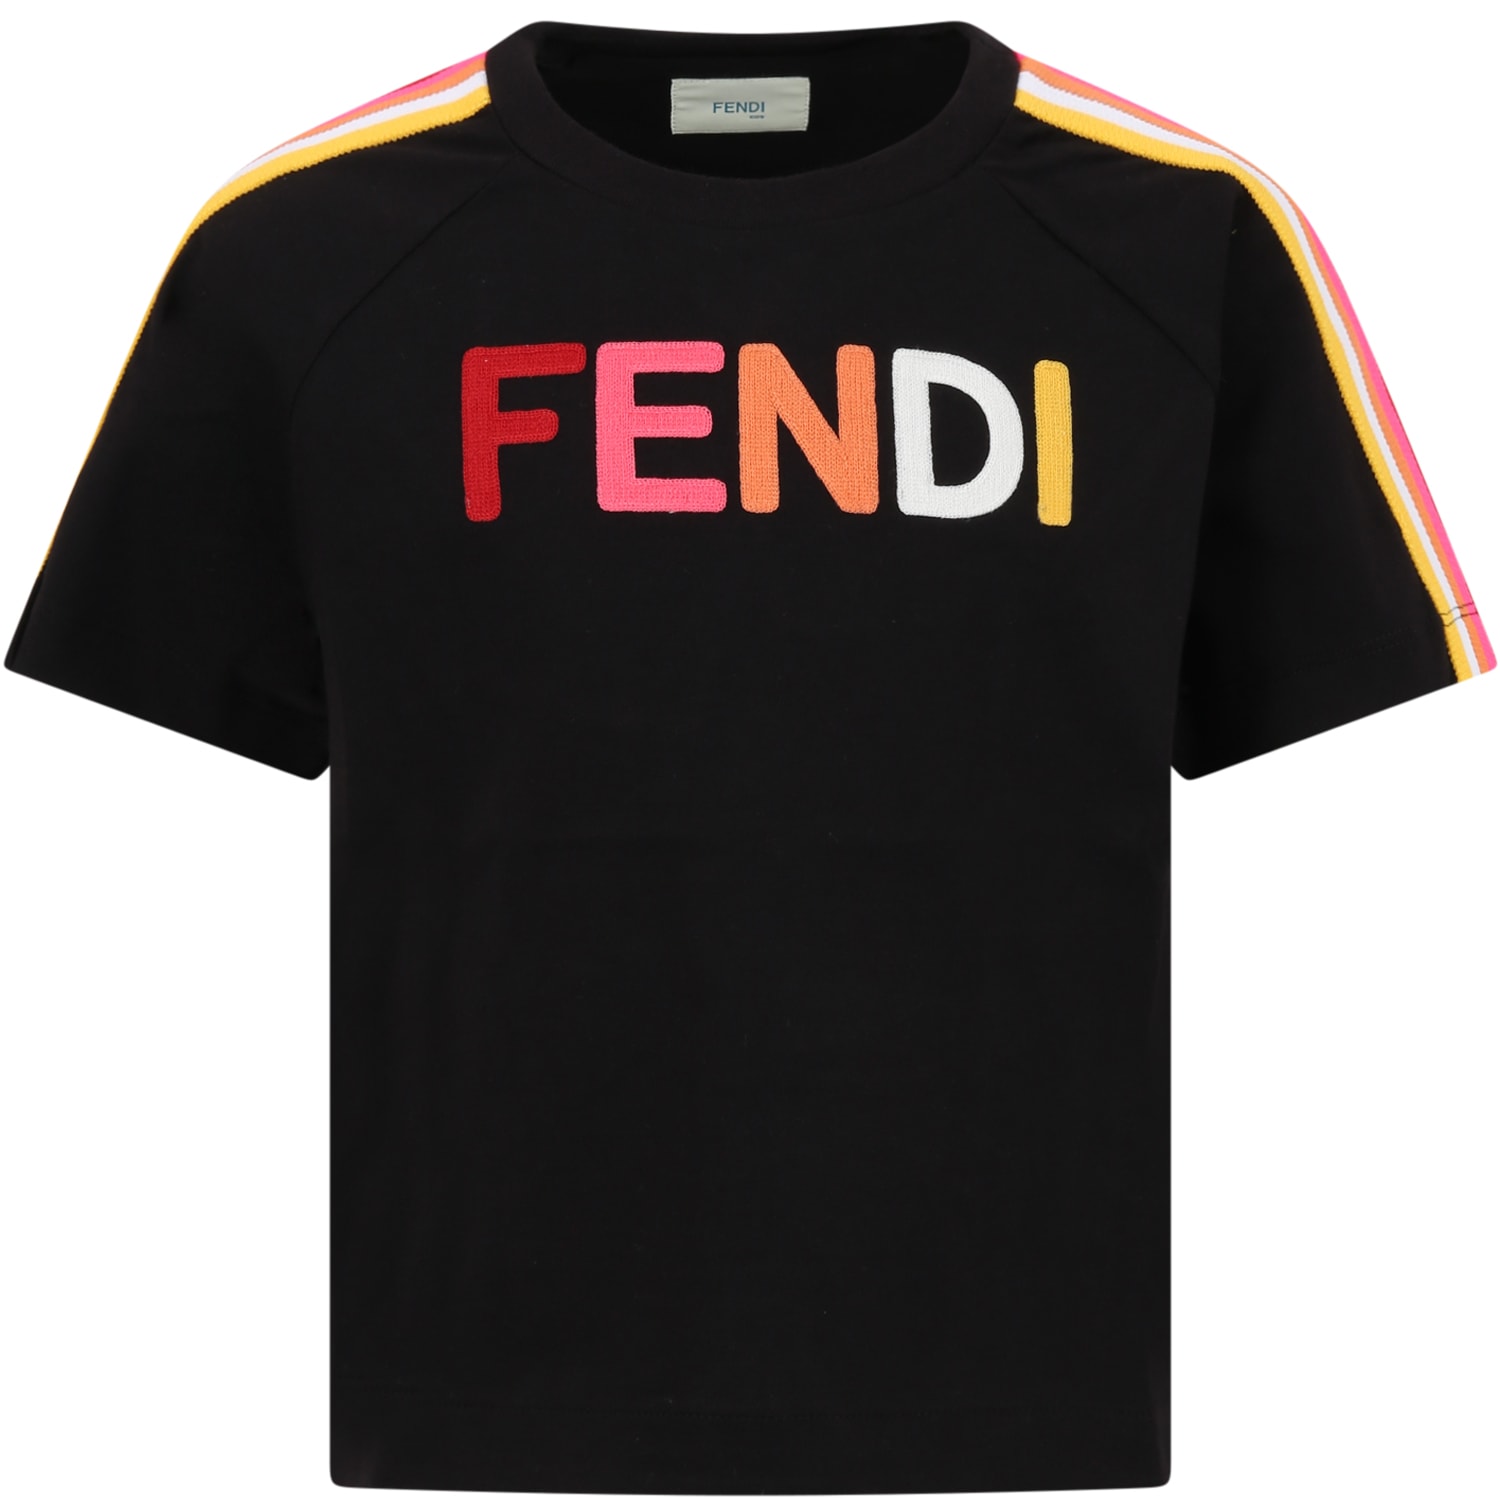 Fendi Black T-shirt For Girl With Logo